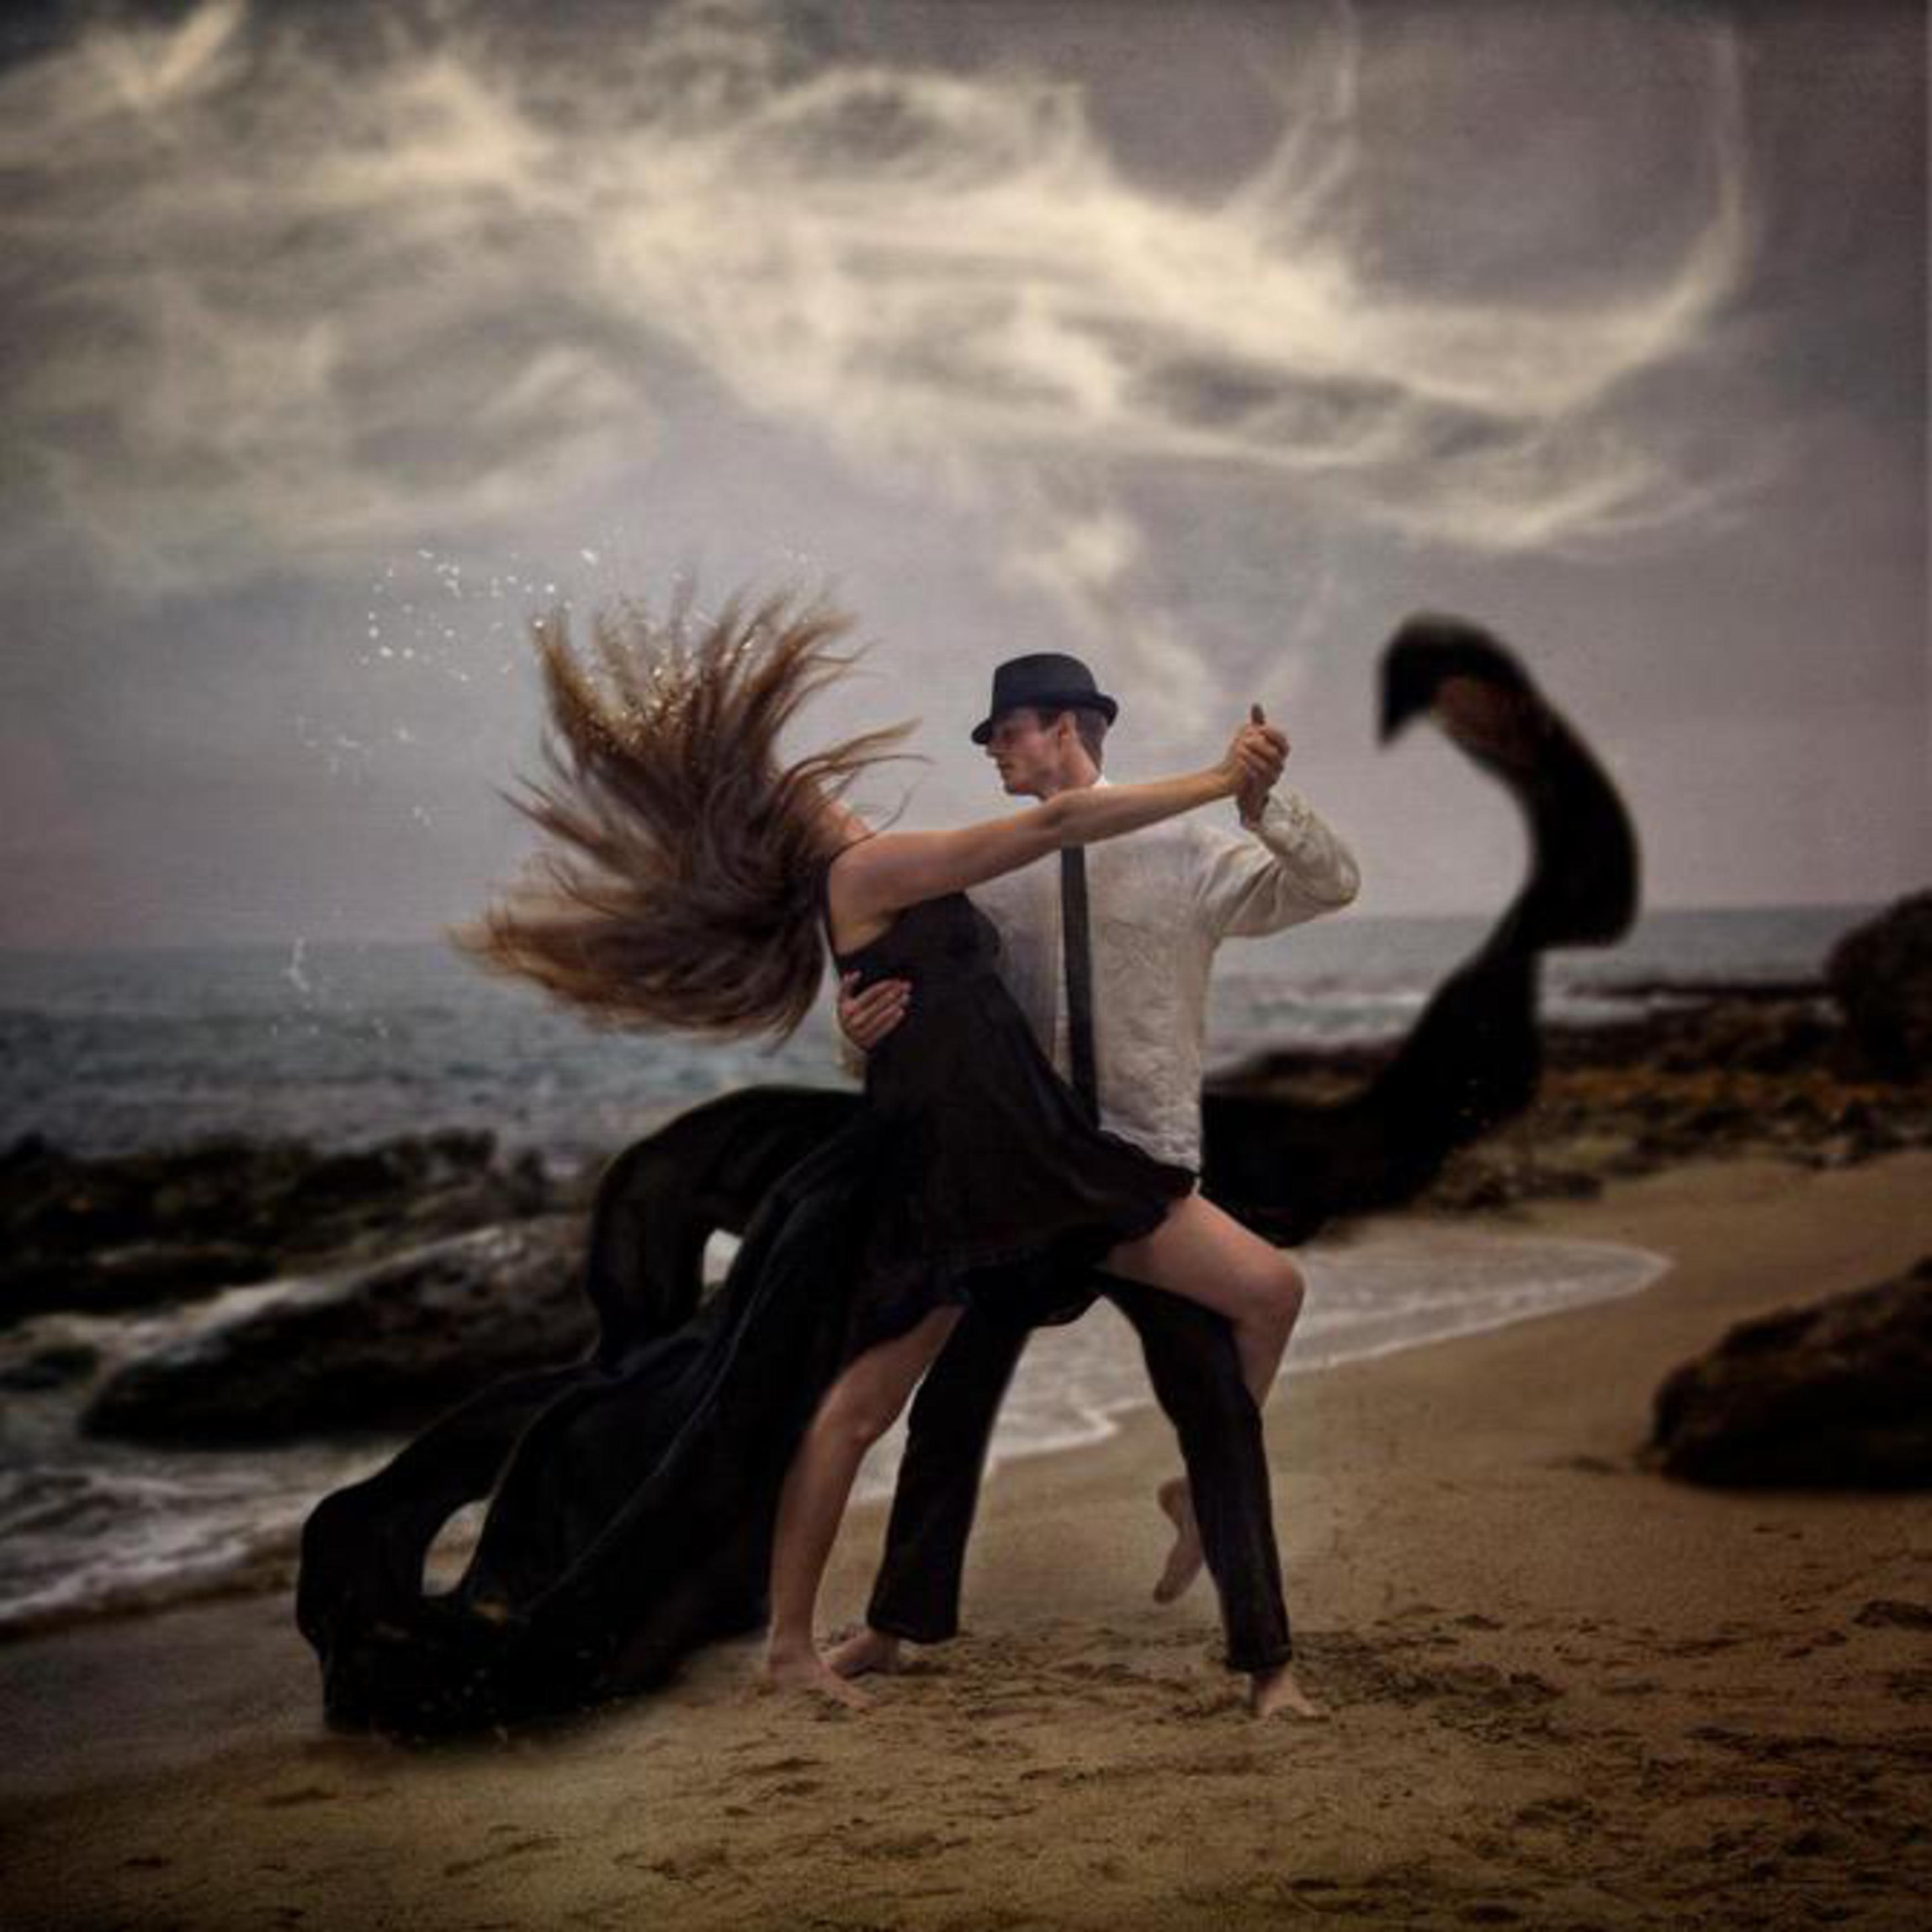 Как кружит голову любовь поит. Танец мужчины и женщины. Танцы для влюбленных. Влюбленные в танце. Двое танцуют.